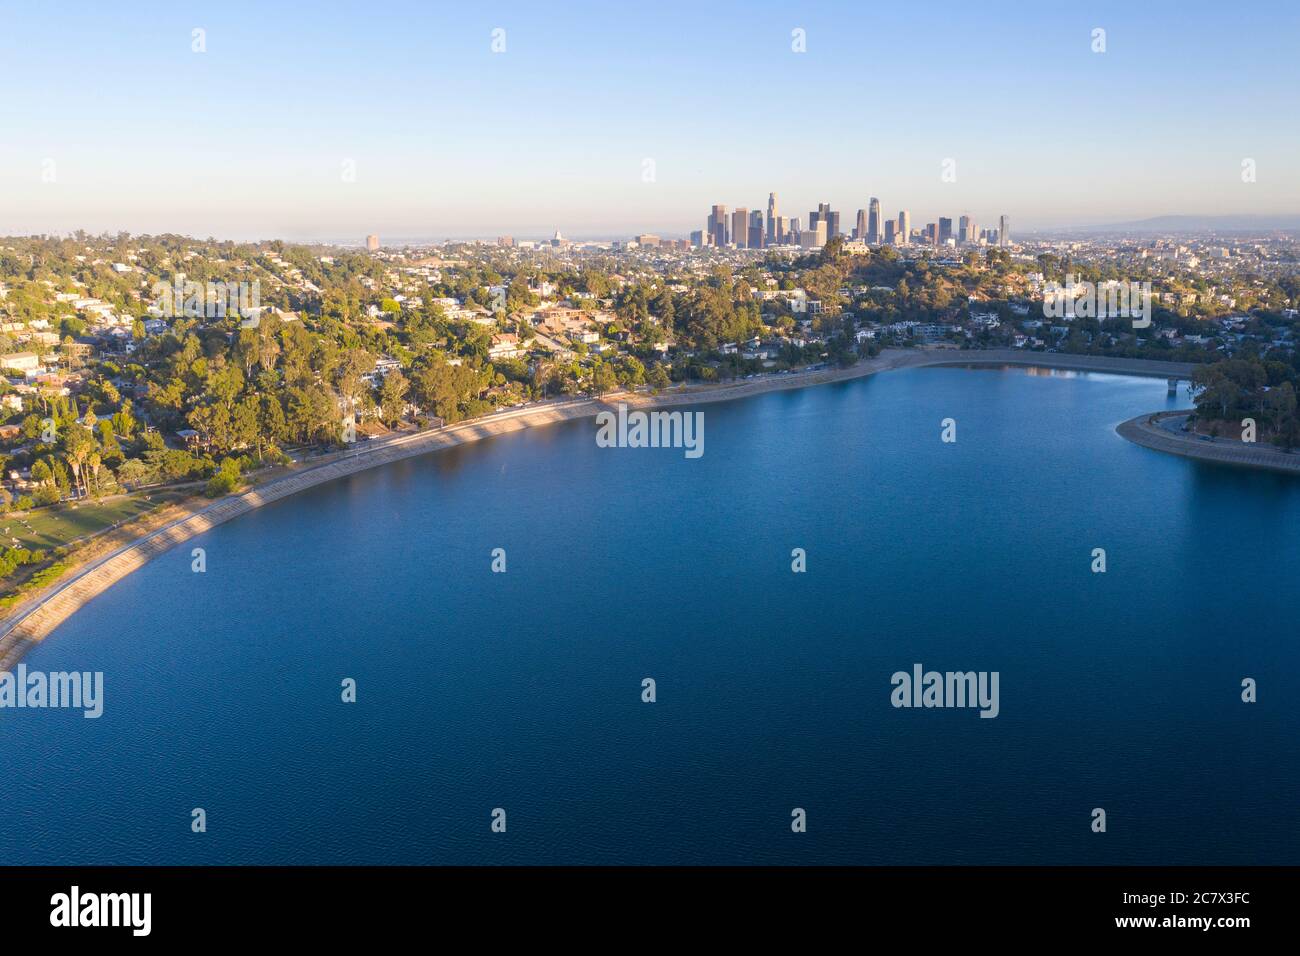 Luftaufnahme des Silver Lake Reservoir mit Downtown Los Angeles Skyline in der Ferne Stockfoto